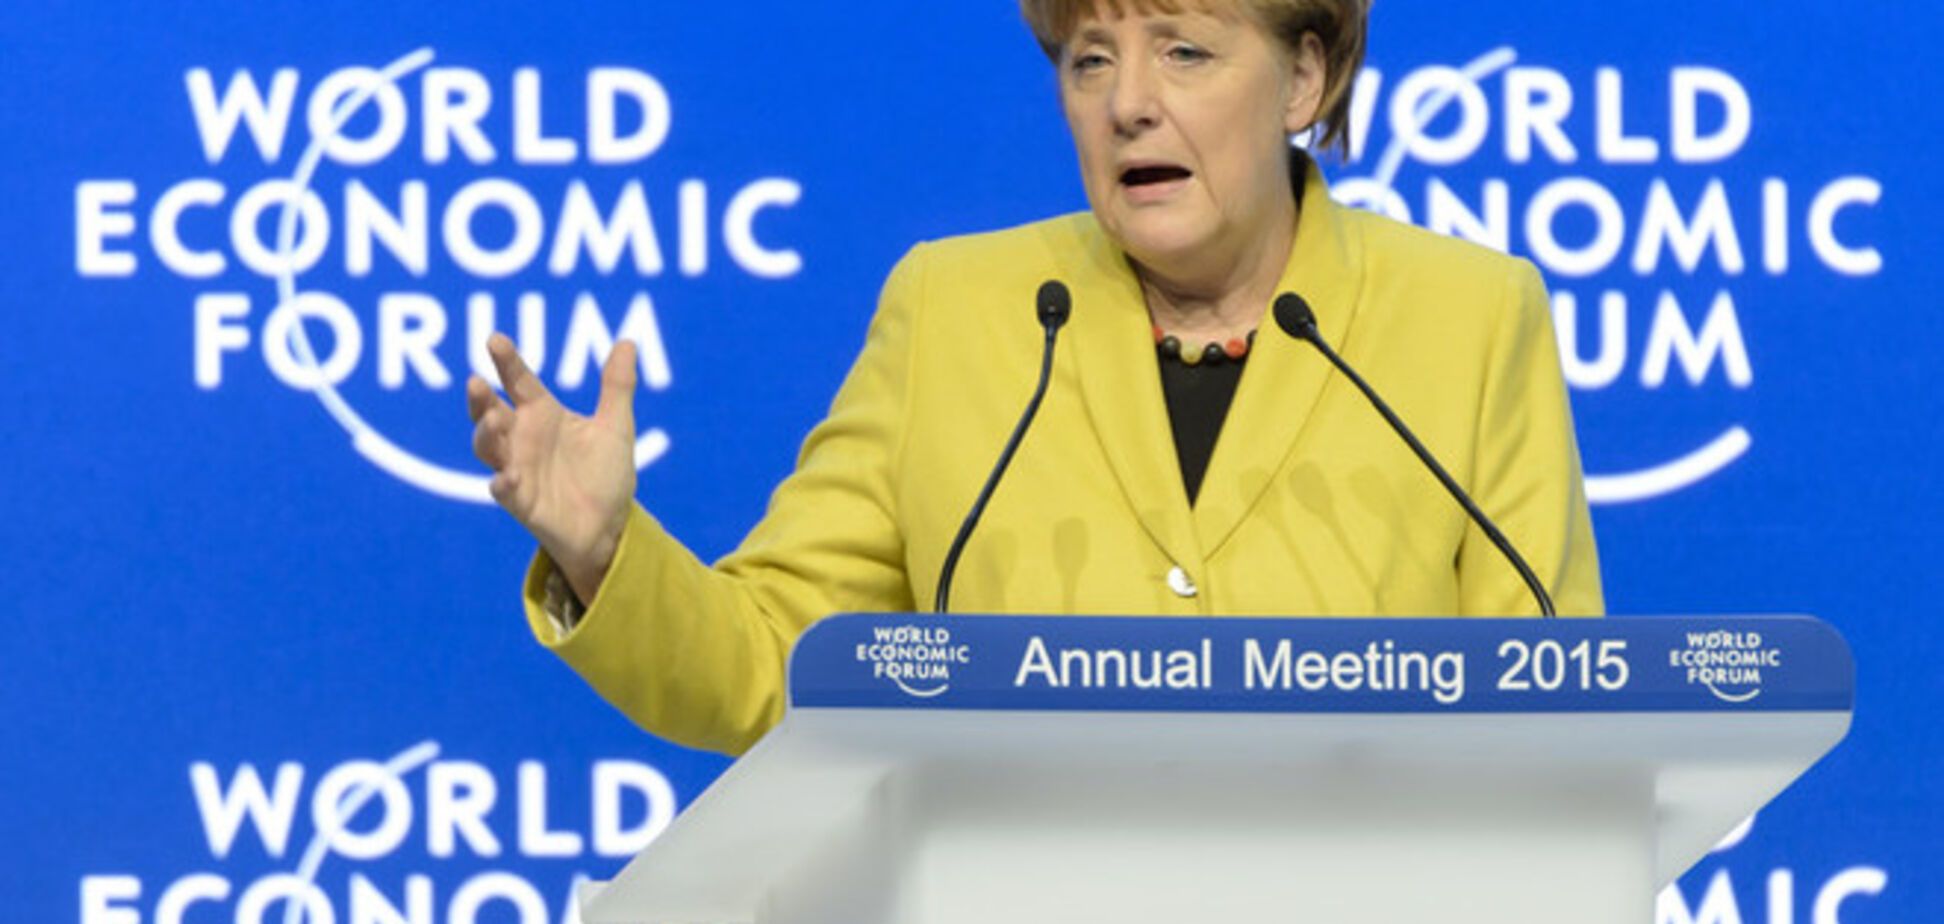 Меркель собралась в США и Канаде говорить об Украине